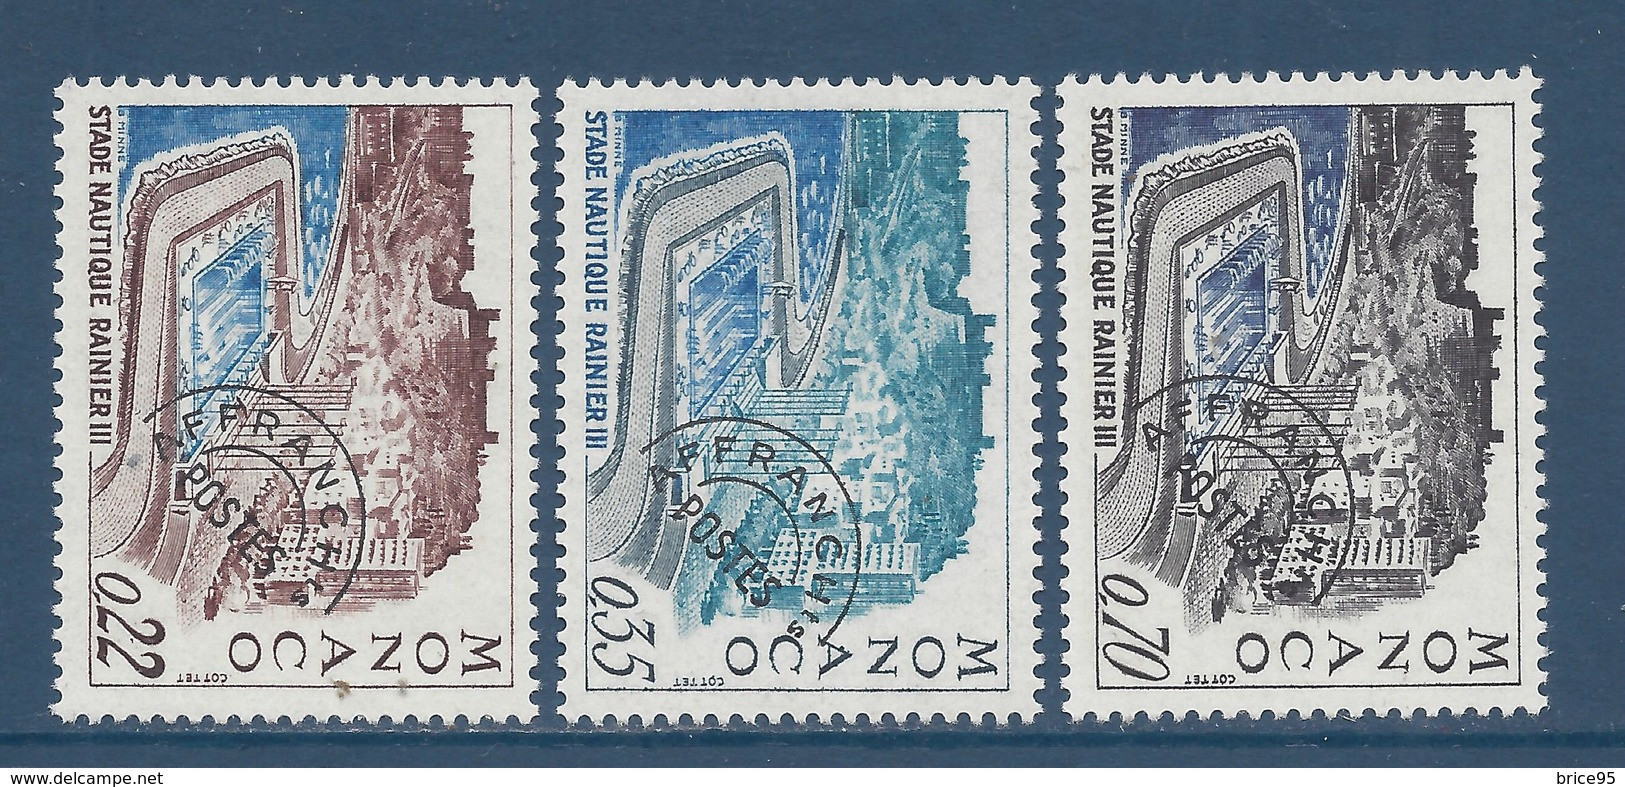 Monaco Préoblitéré - YT N° 27 à 29 ** - Neuf Sans Charnière - 1969 - Prematasellado